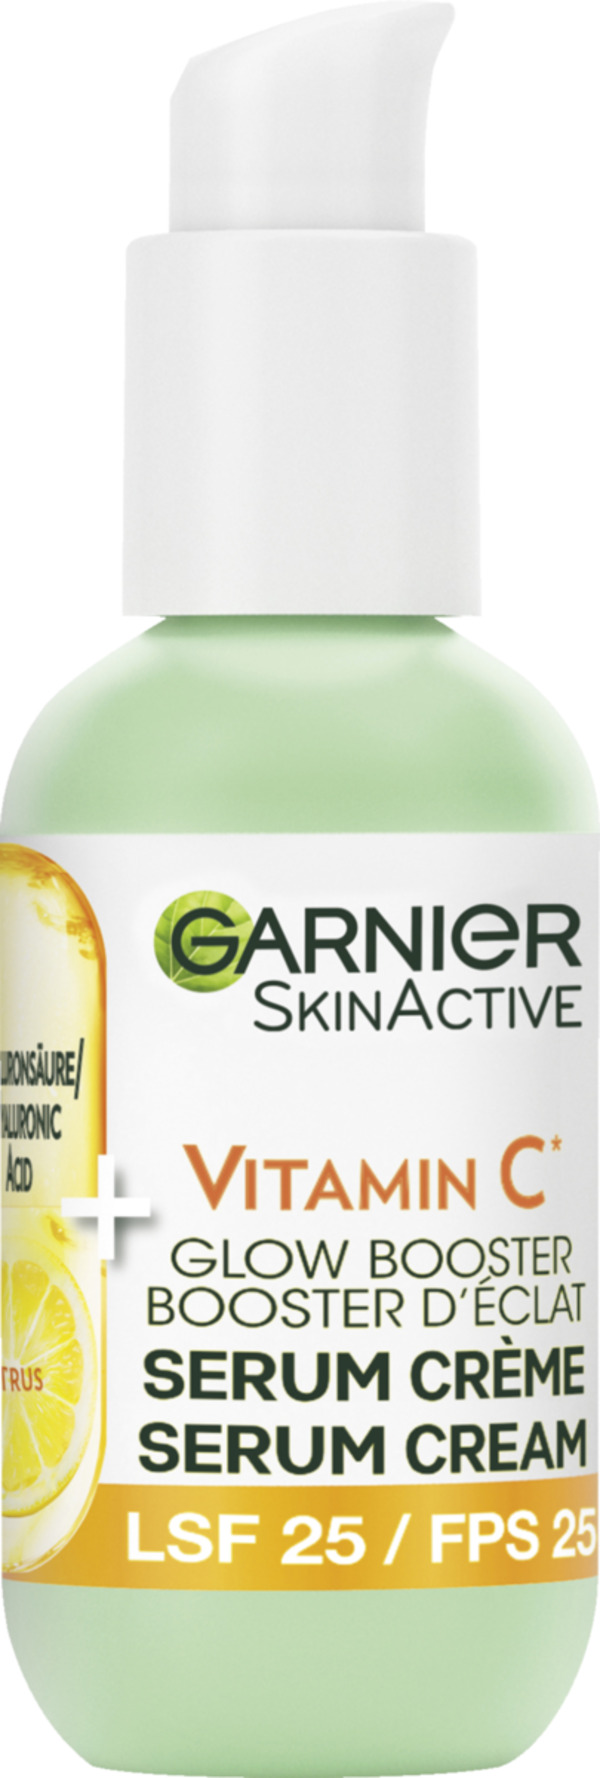 Bild 1 von Garnier SkinActive 2in1 Glow Booster Serum Crème